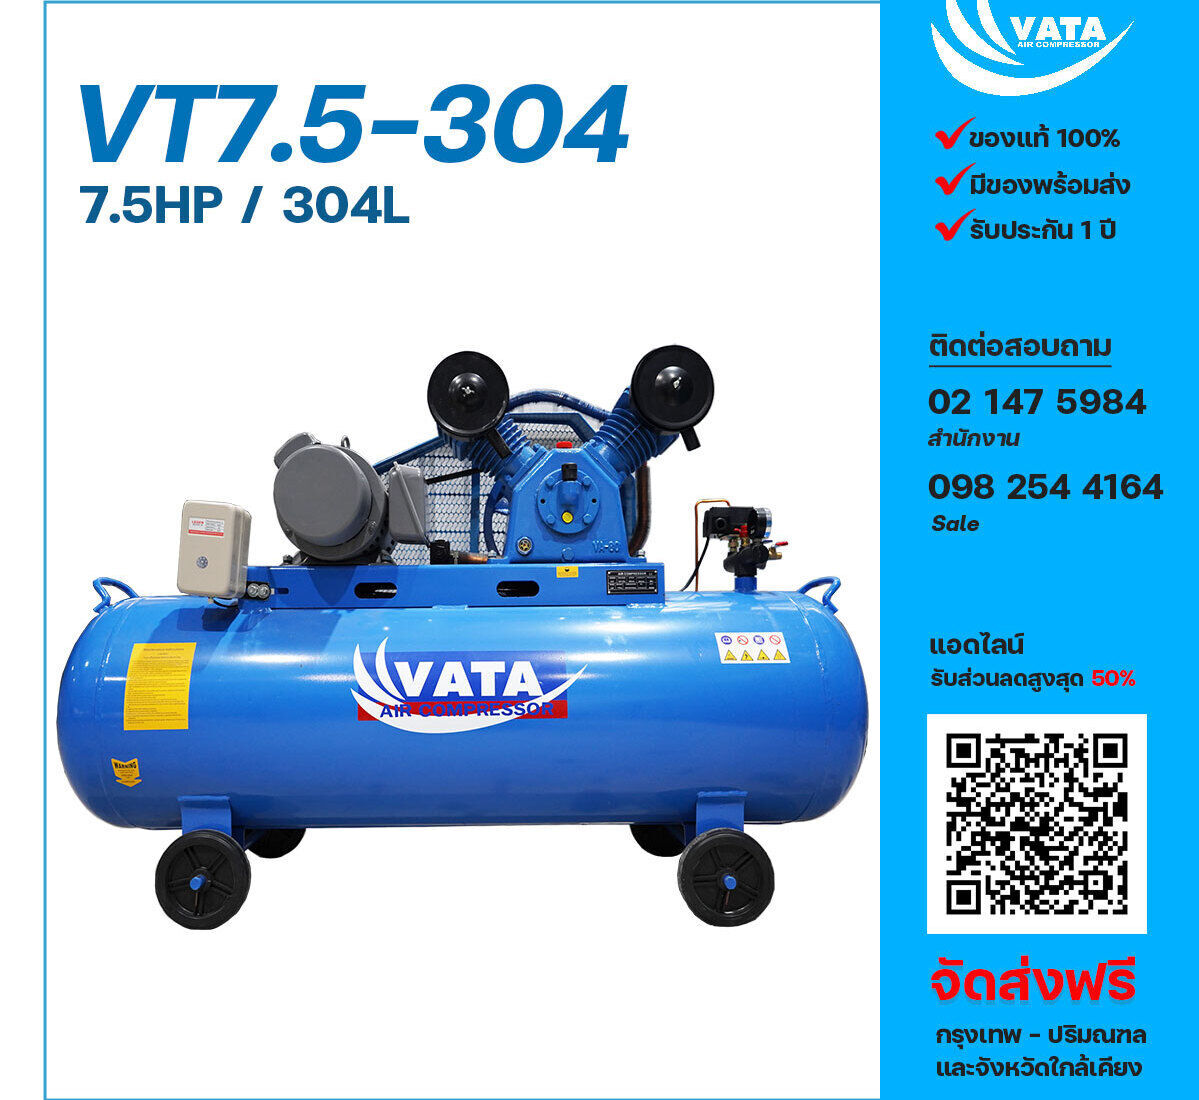 ปั๊มลมวาตะ VATA VT7.5-304 380V ปั๊มลมลูกสูบ ขนาด 2 สูบ 7.5 แรงม้า 304 ลิตร VATA พร้อมมอเตอร์ ไฟ 380V ส่งฟรี กรุงเทพฯ-ปริมณฑล รับประกัน 1 ปี